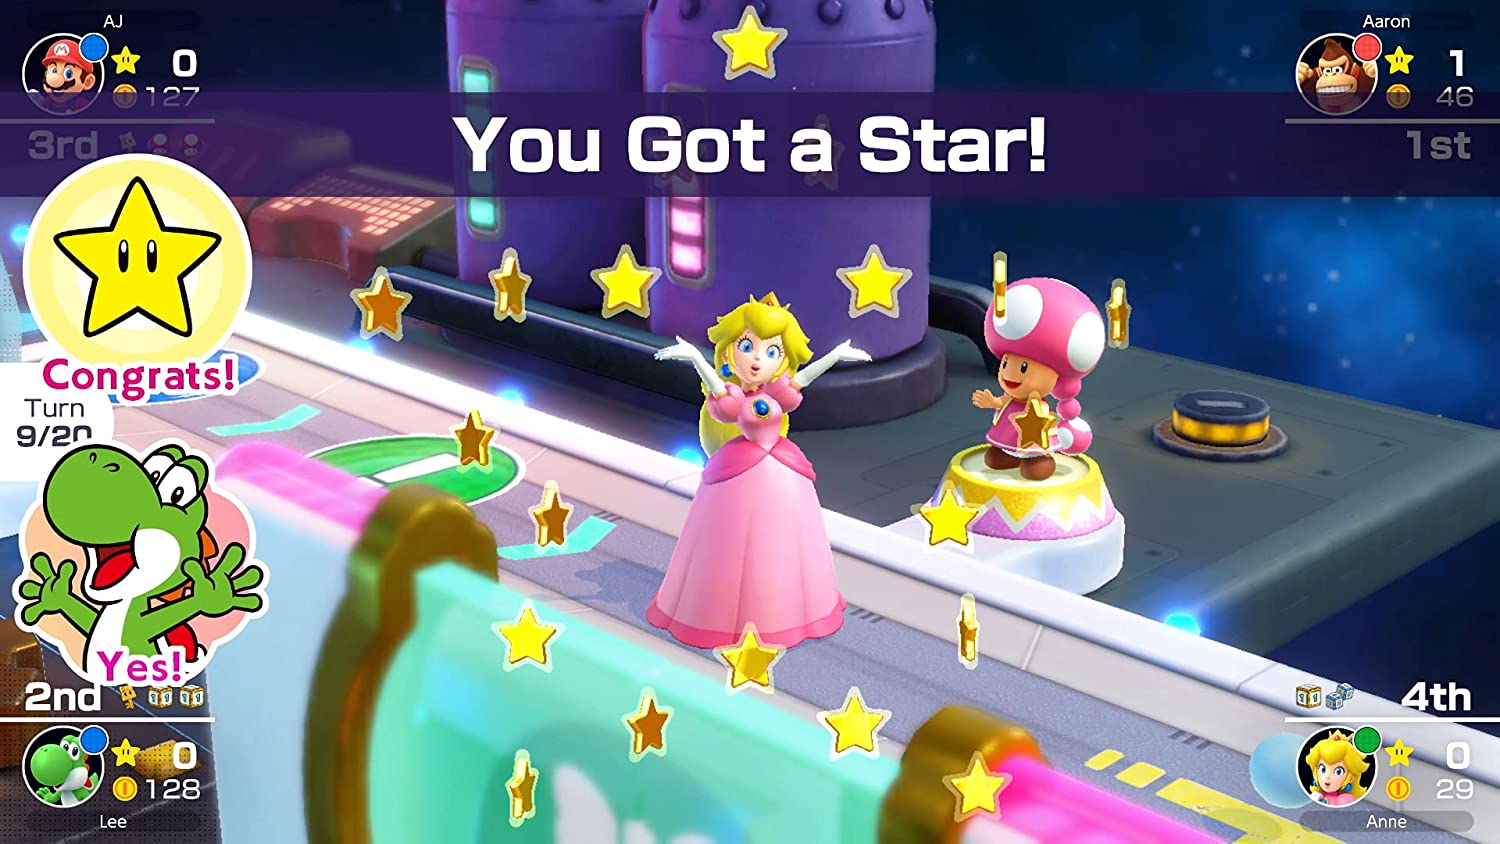 Juego Nintendo SWITCH - Mario Party Superstars